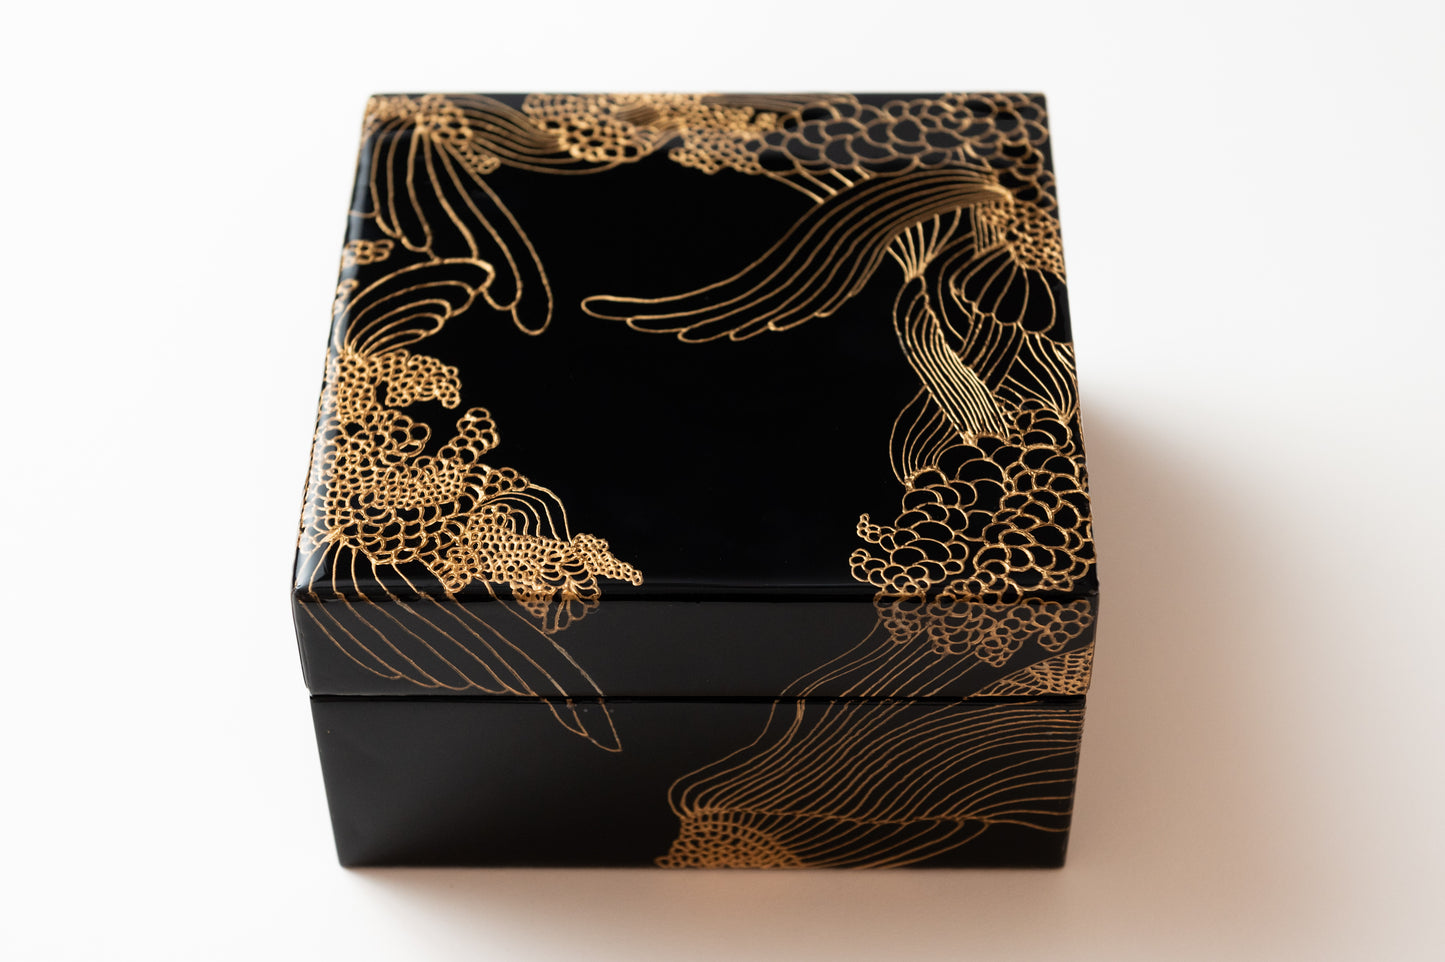 Luxury Watch Rose Gold Jewelry box by Marie De Decker